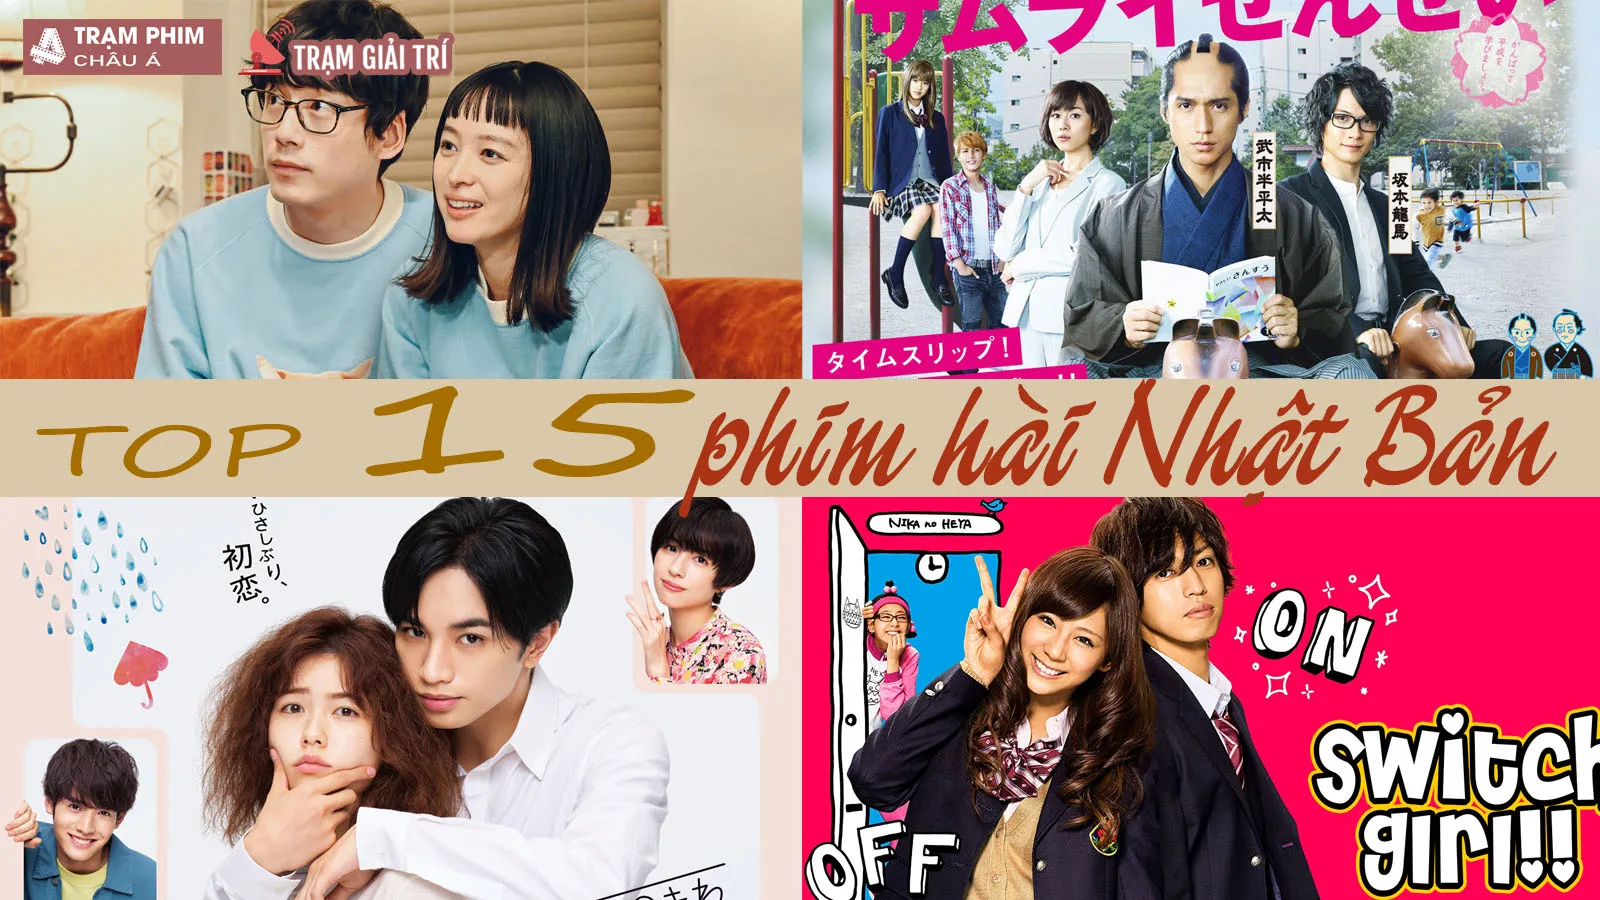 Top 15 phim hài Nhật Bản hay nhất, xem ngay cho nóng